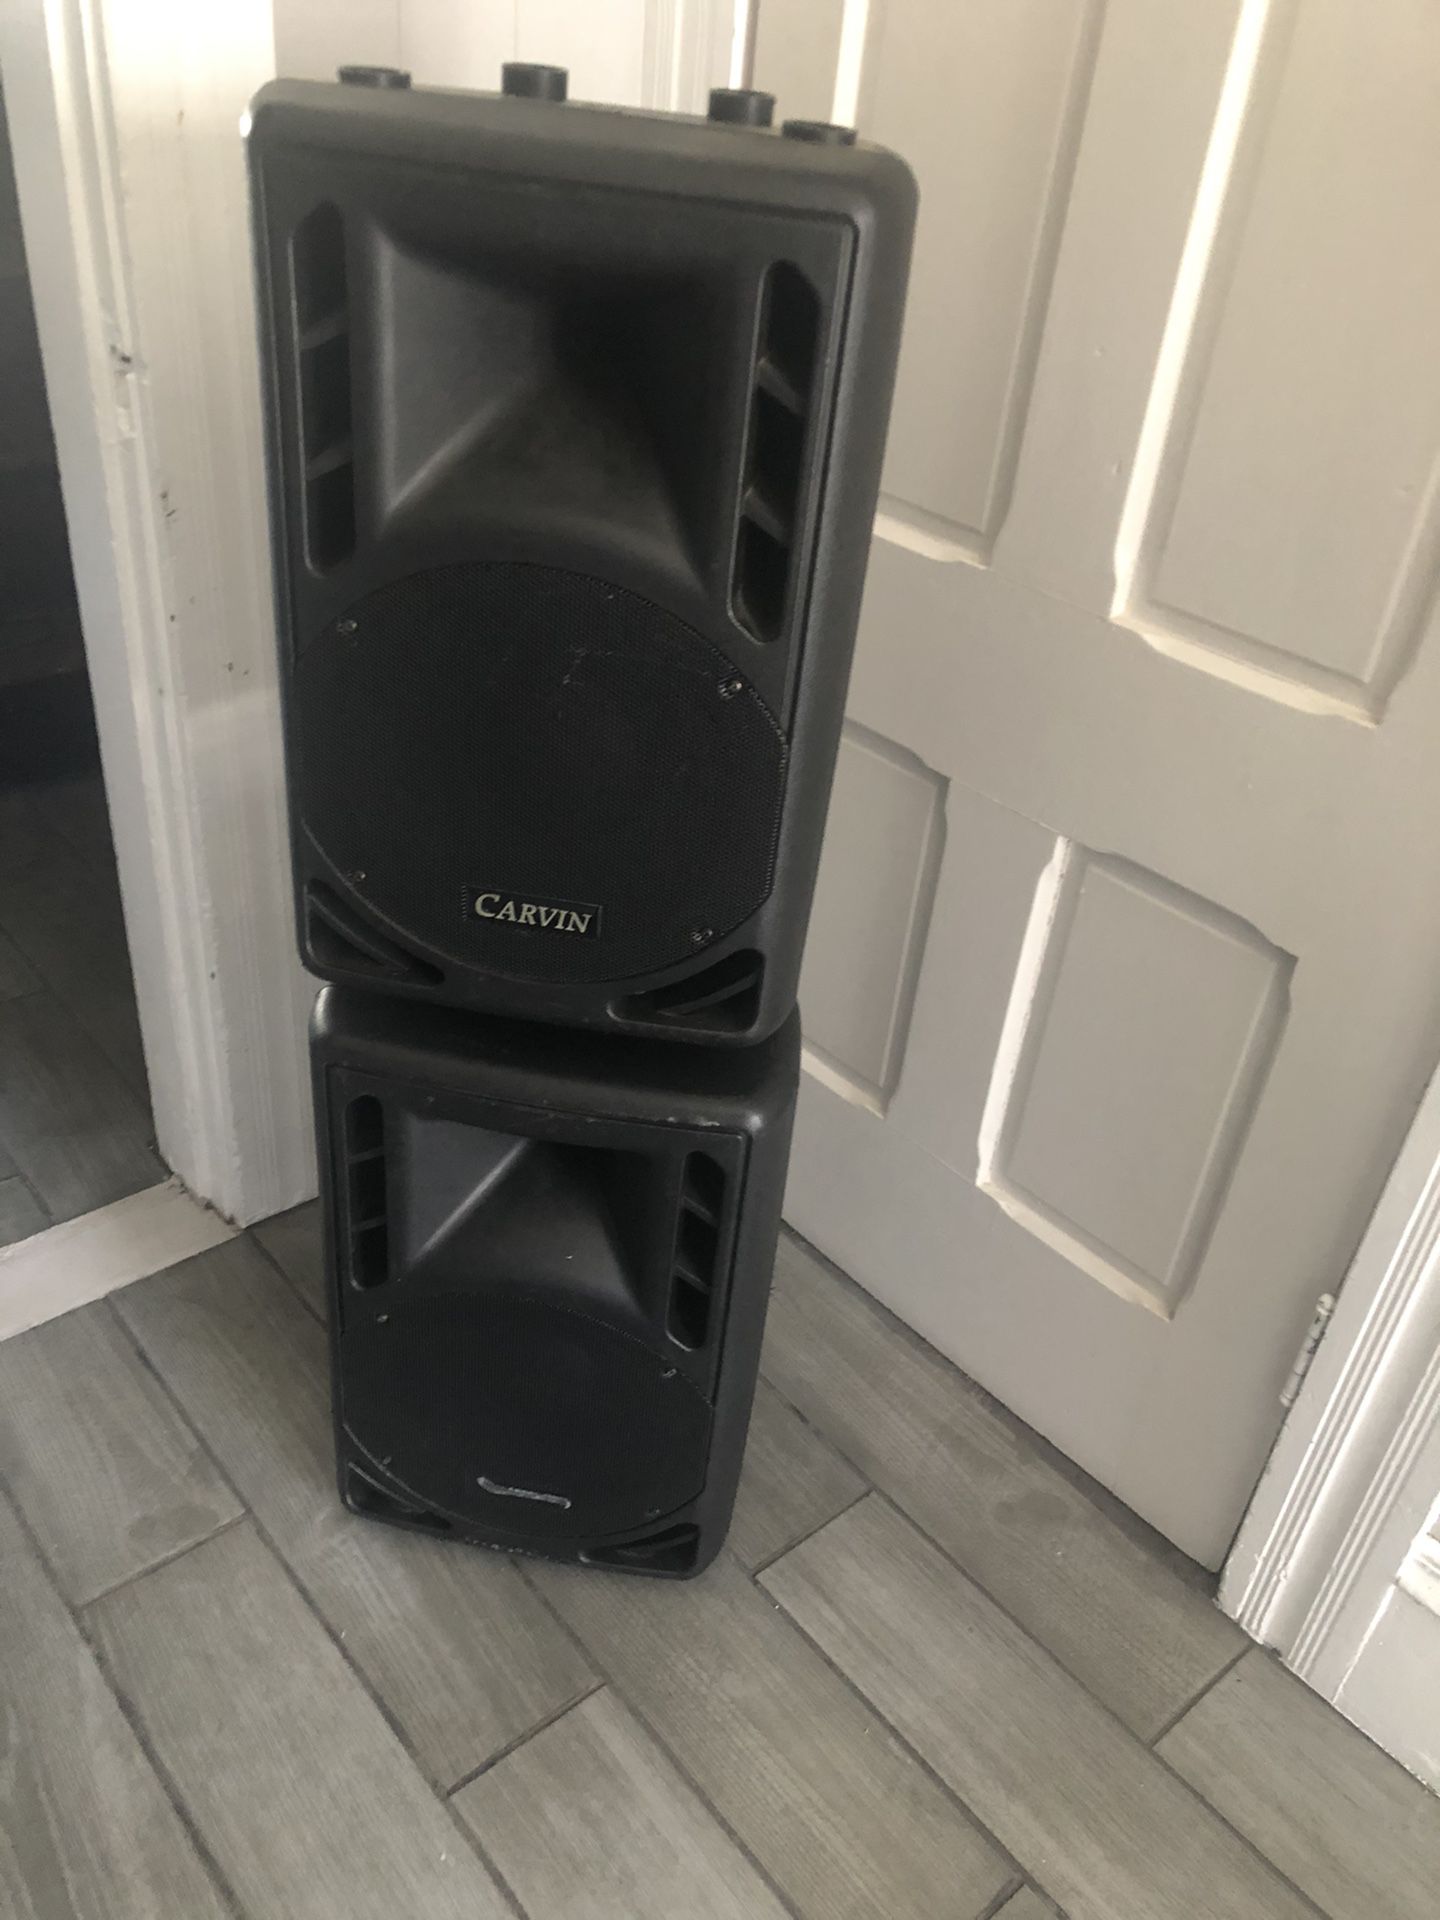 Carvin 10” speakers